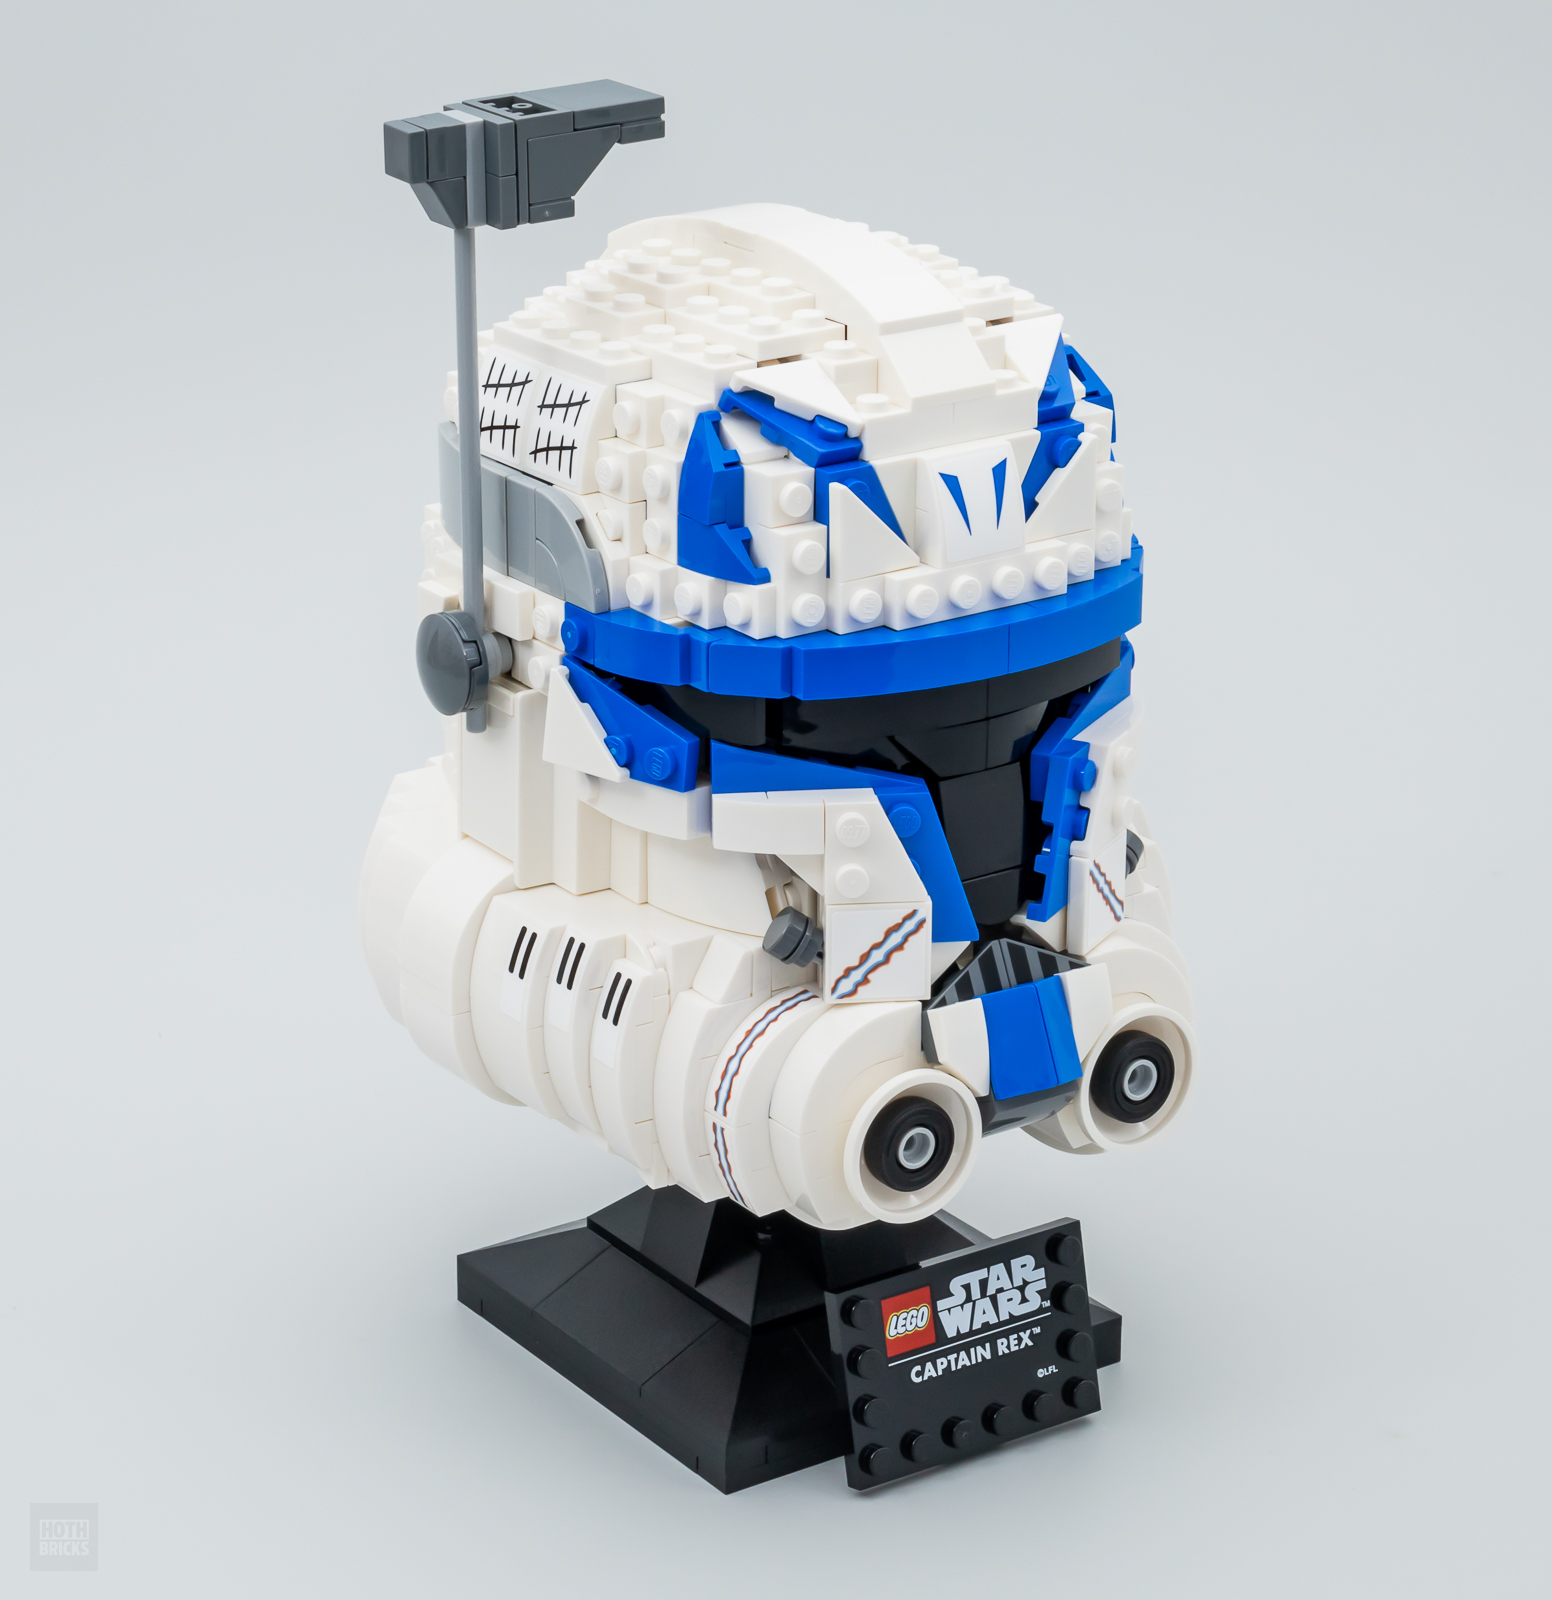 ძალიან სწრაფად ტესტირება: LEGO Star Wars 75349 კაპიტანი რექსი ჩაფხუტი